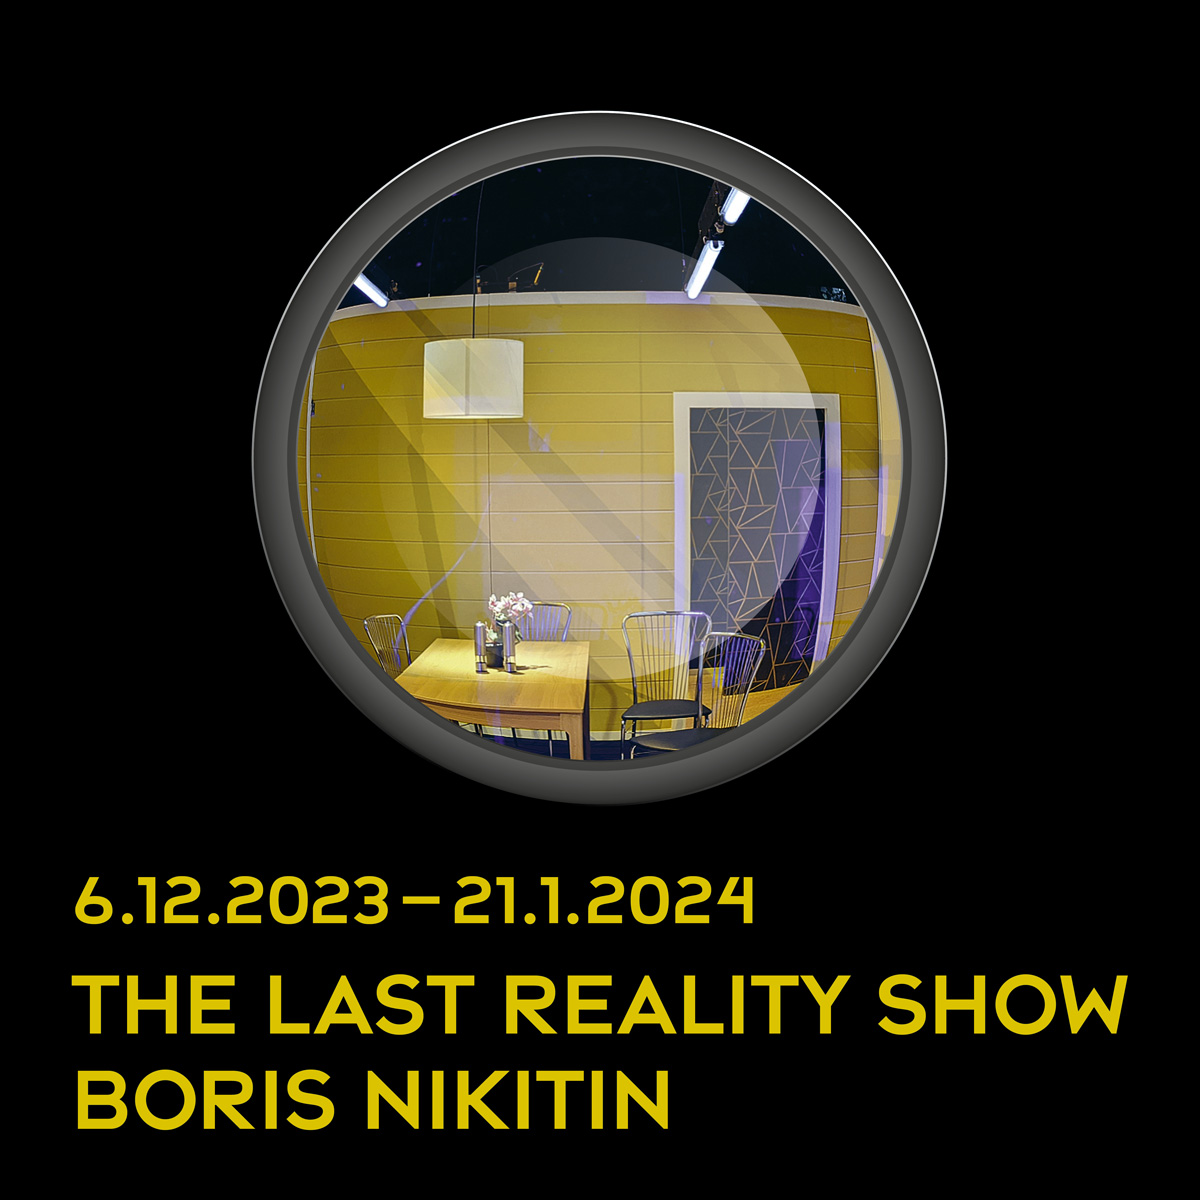 The Last Reality Show. Boris Nikitin